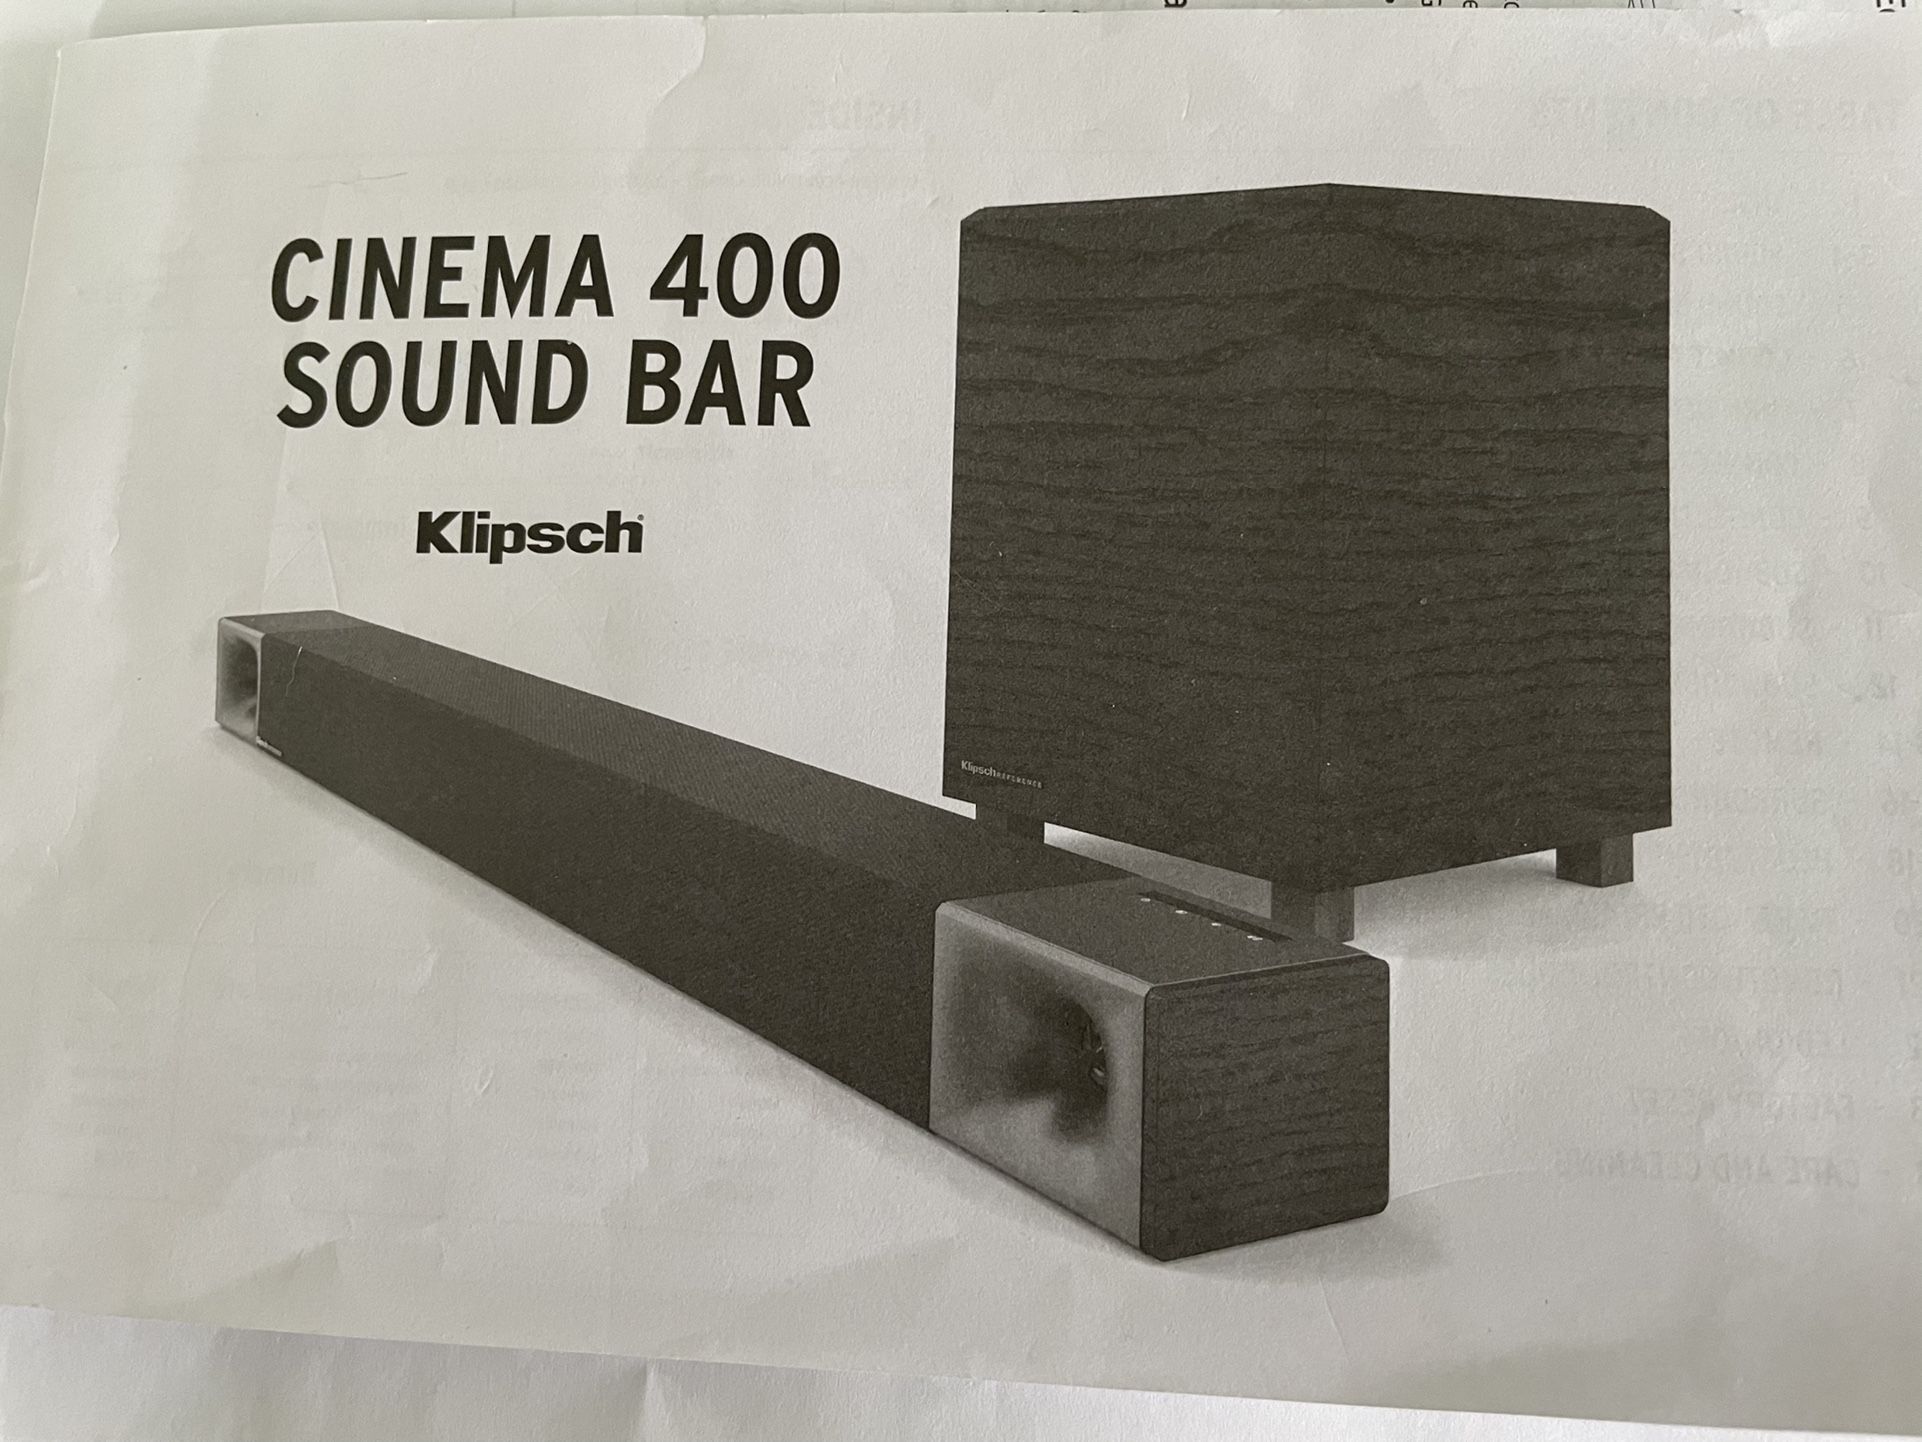 Klipsch Cinema 400 Sound Bar